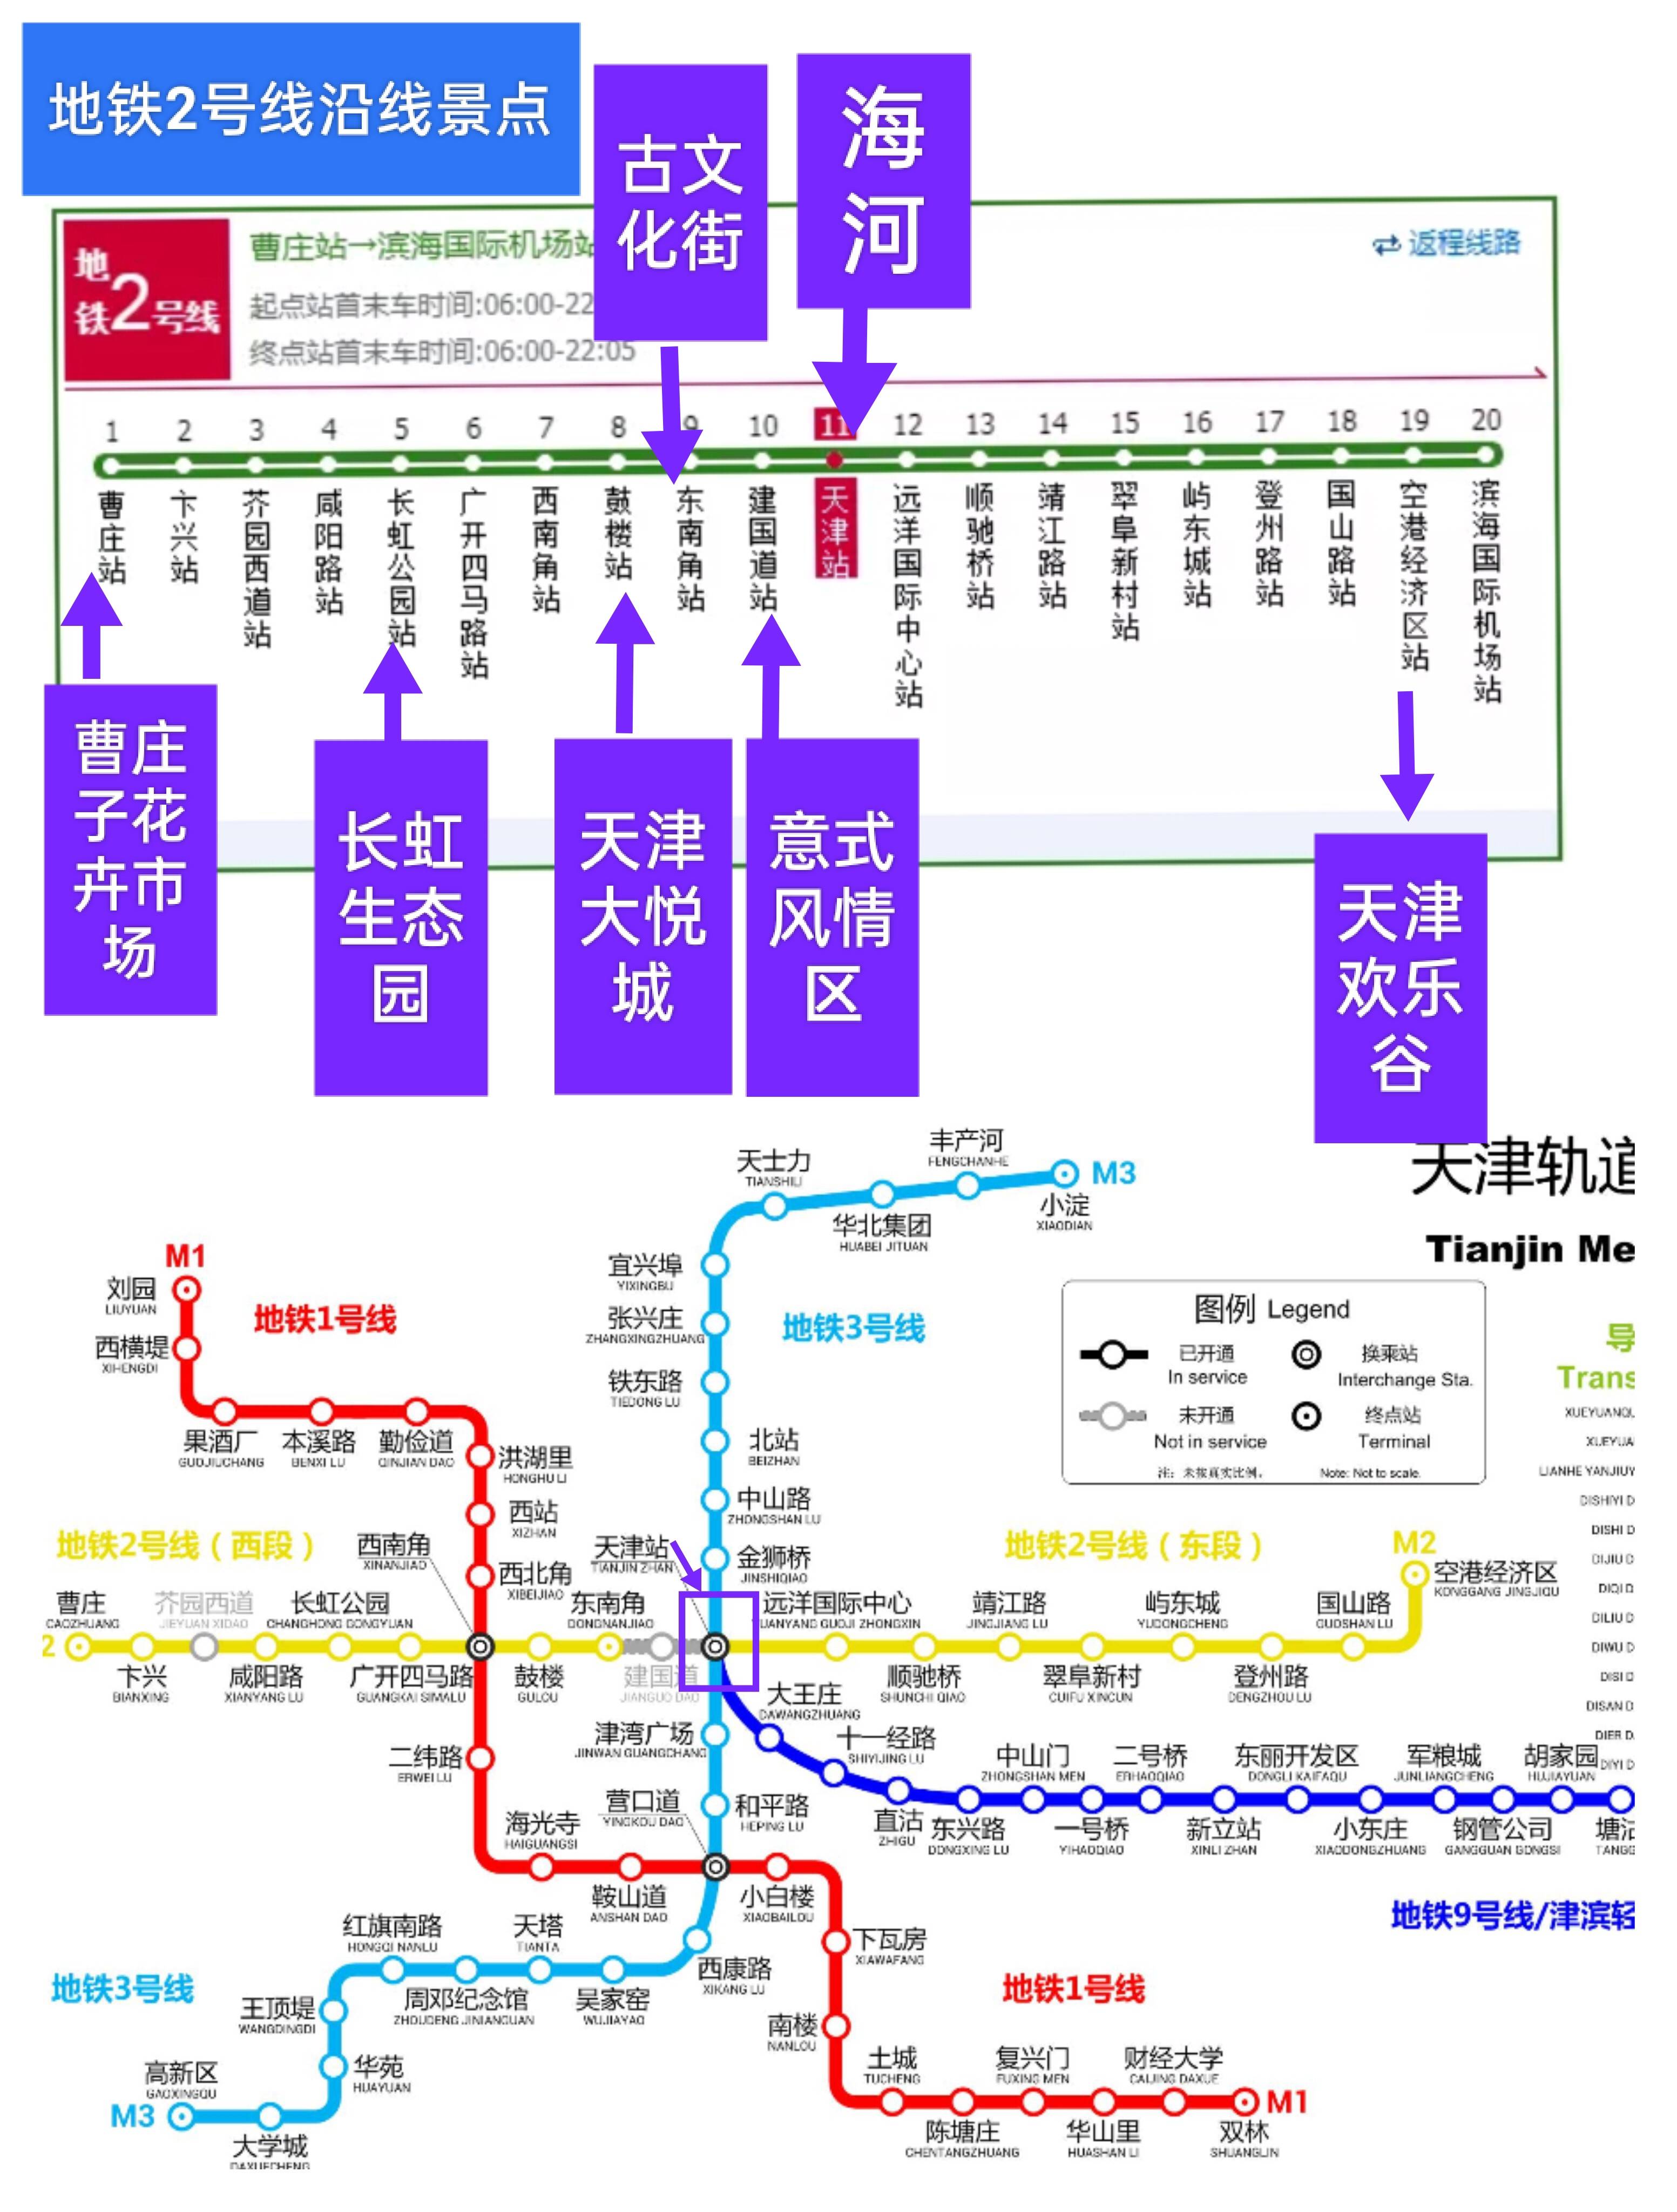 天津火车站行李寄存怎么收费的?